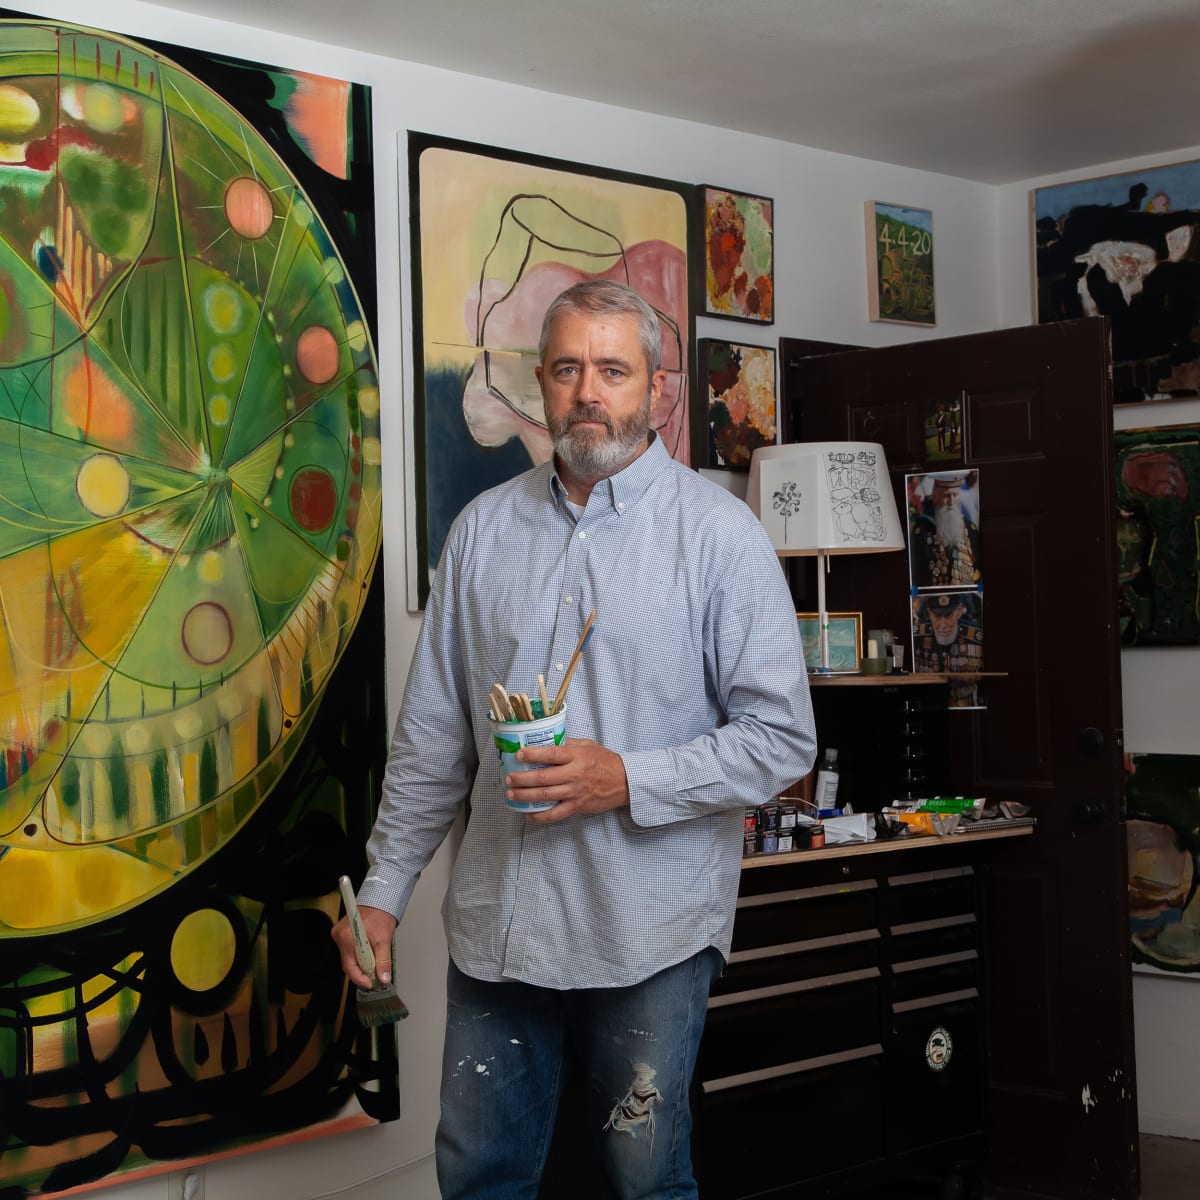 Artist Talk: David Pagel & Robert Gunderman - A Conversation about Painting